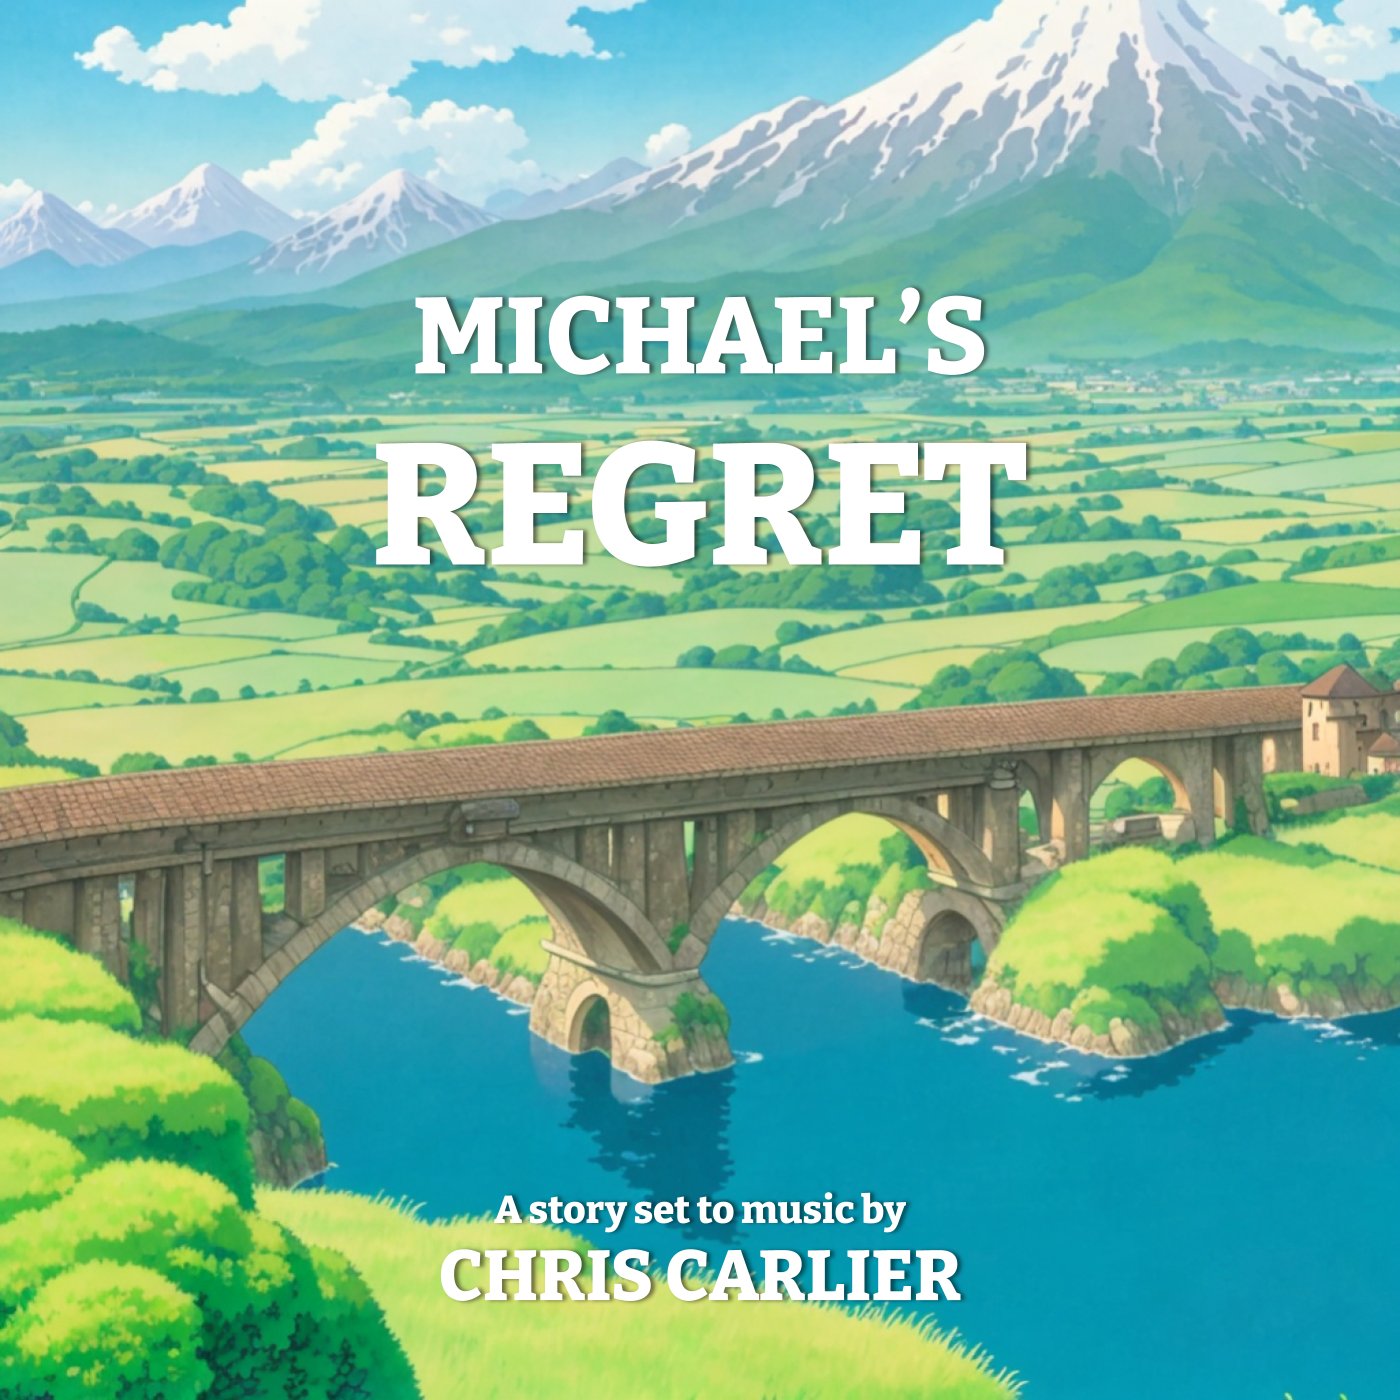 Chris Carlier - Michael's Regret album cover